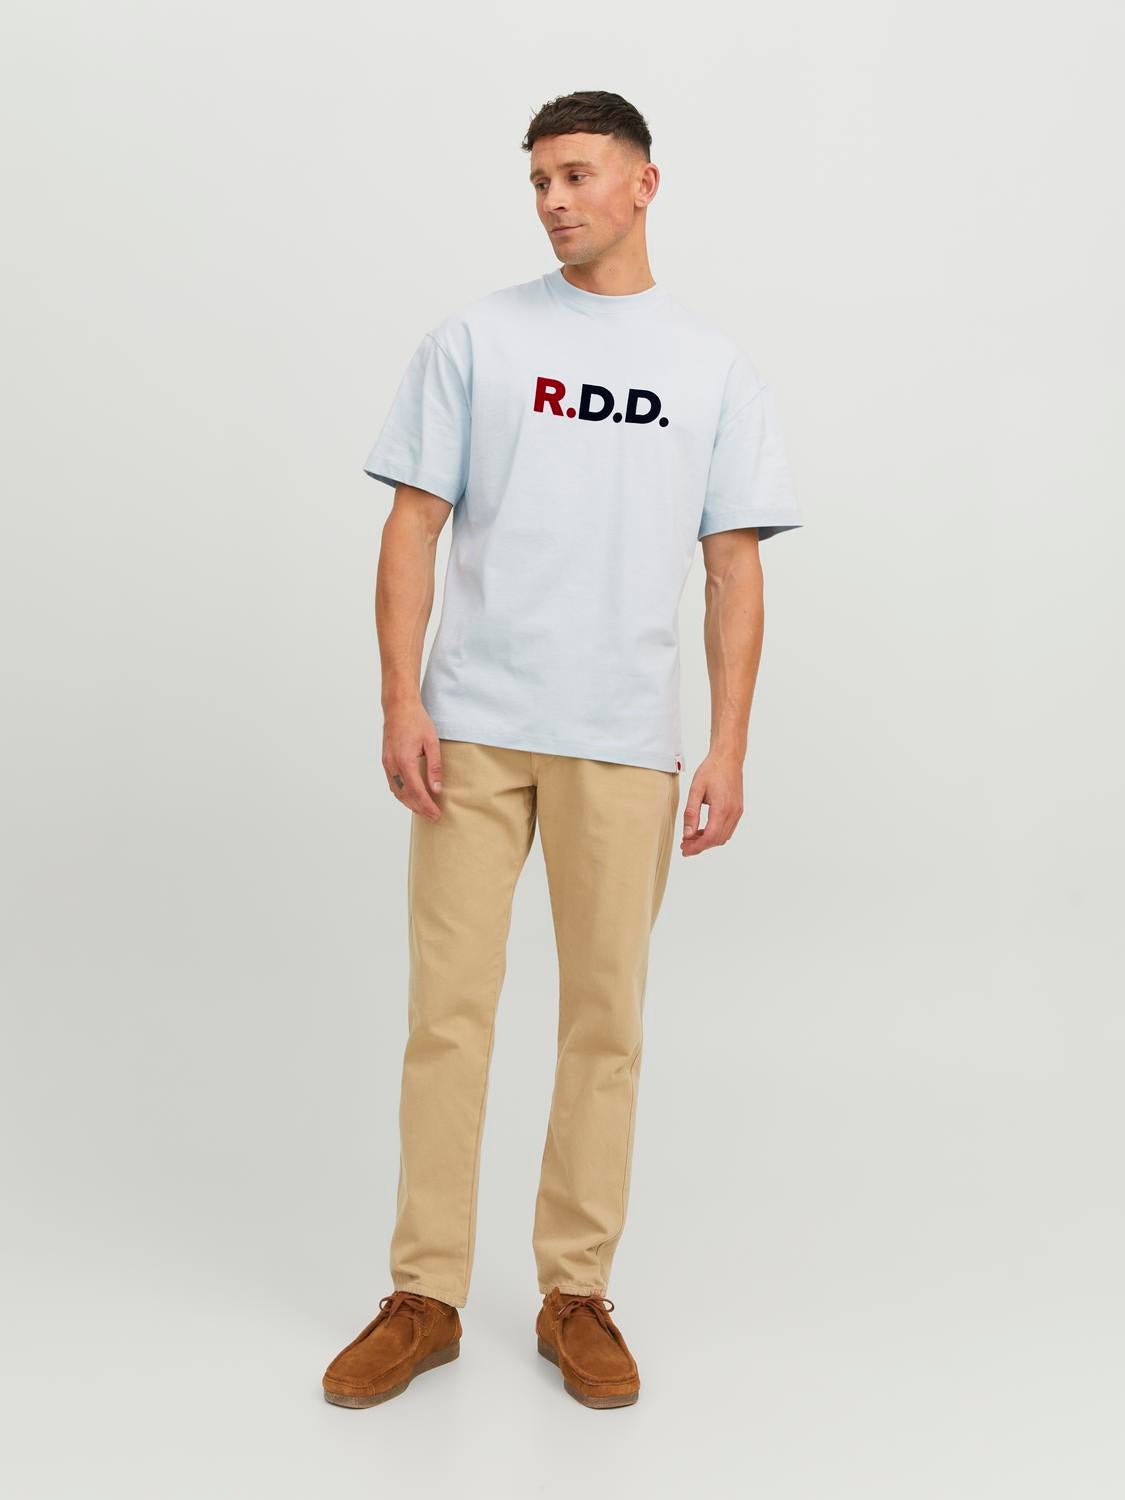 RDD Logo Crew neck T-shirt